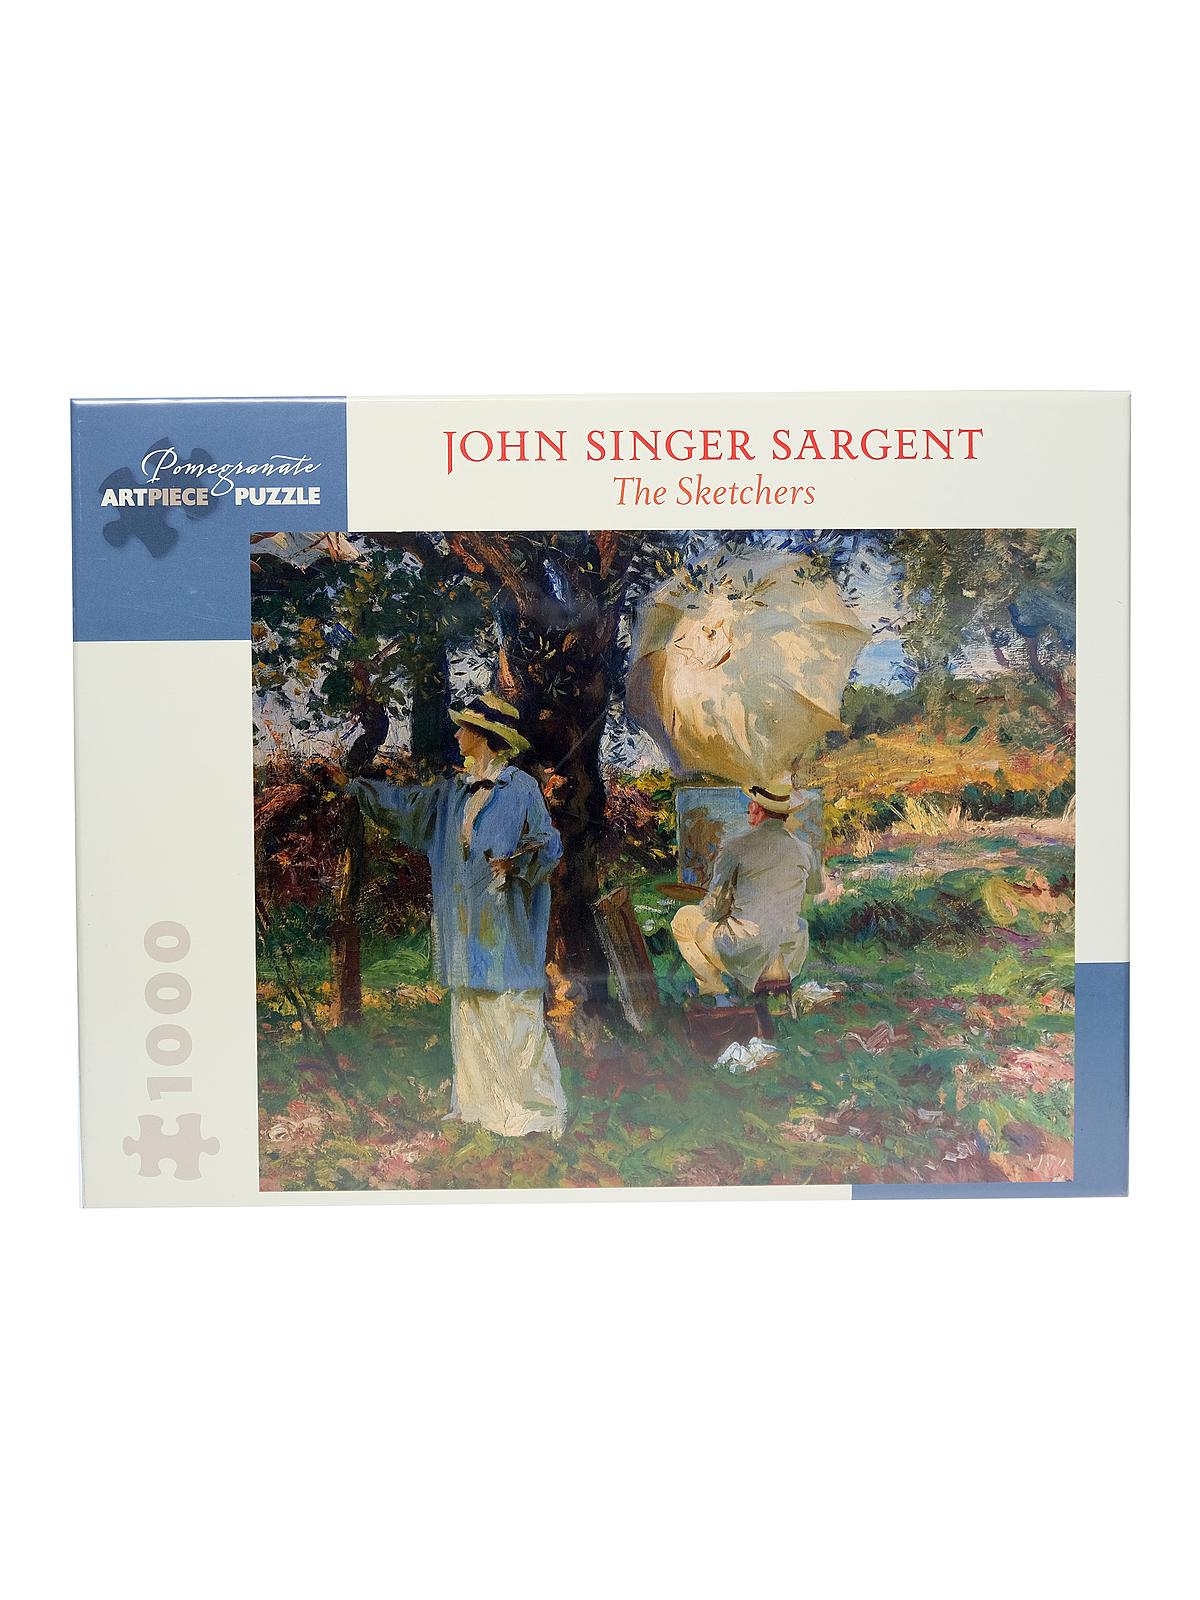 John Singer Sargent: The Sketchers